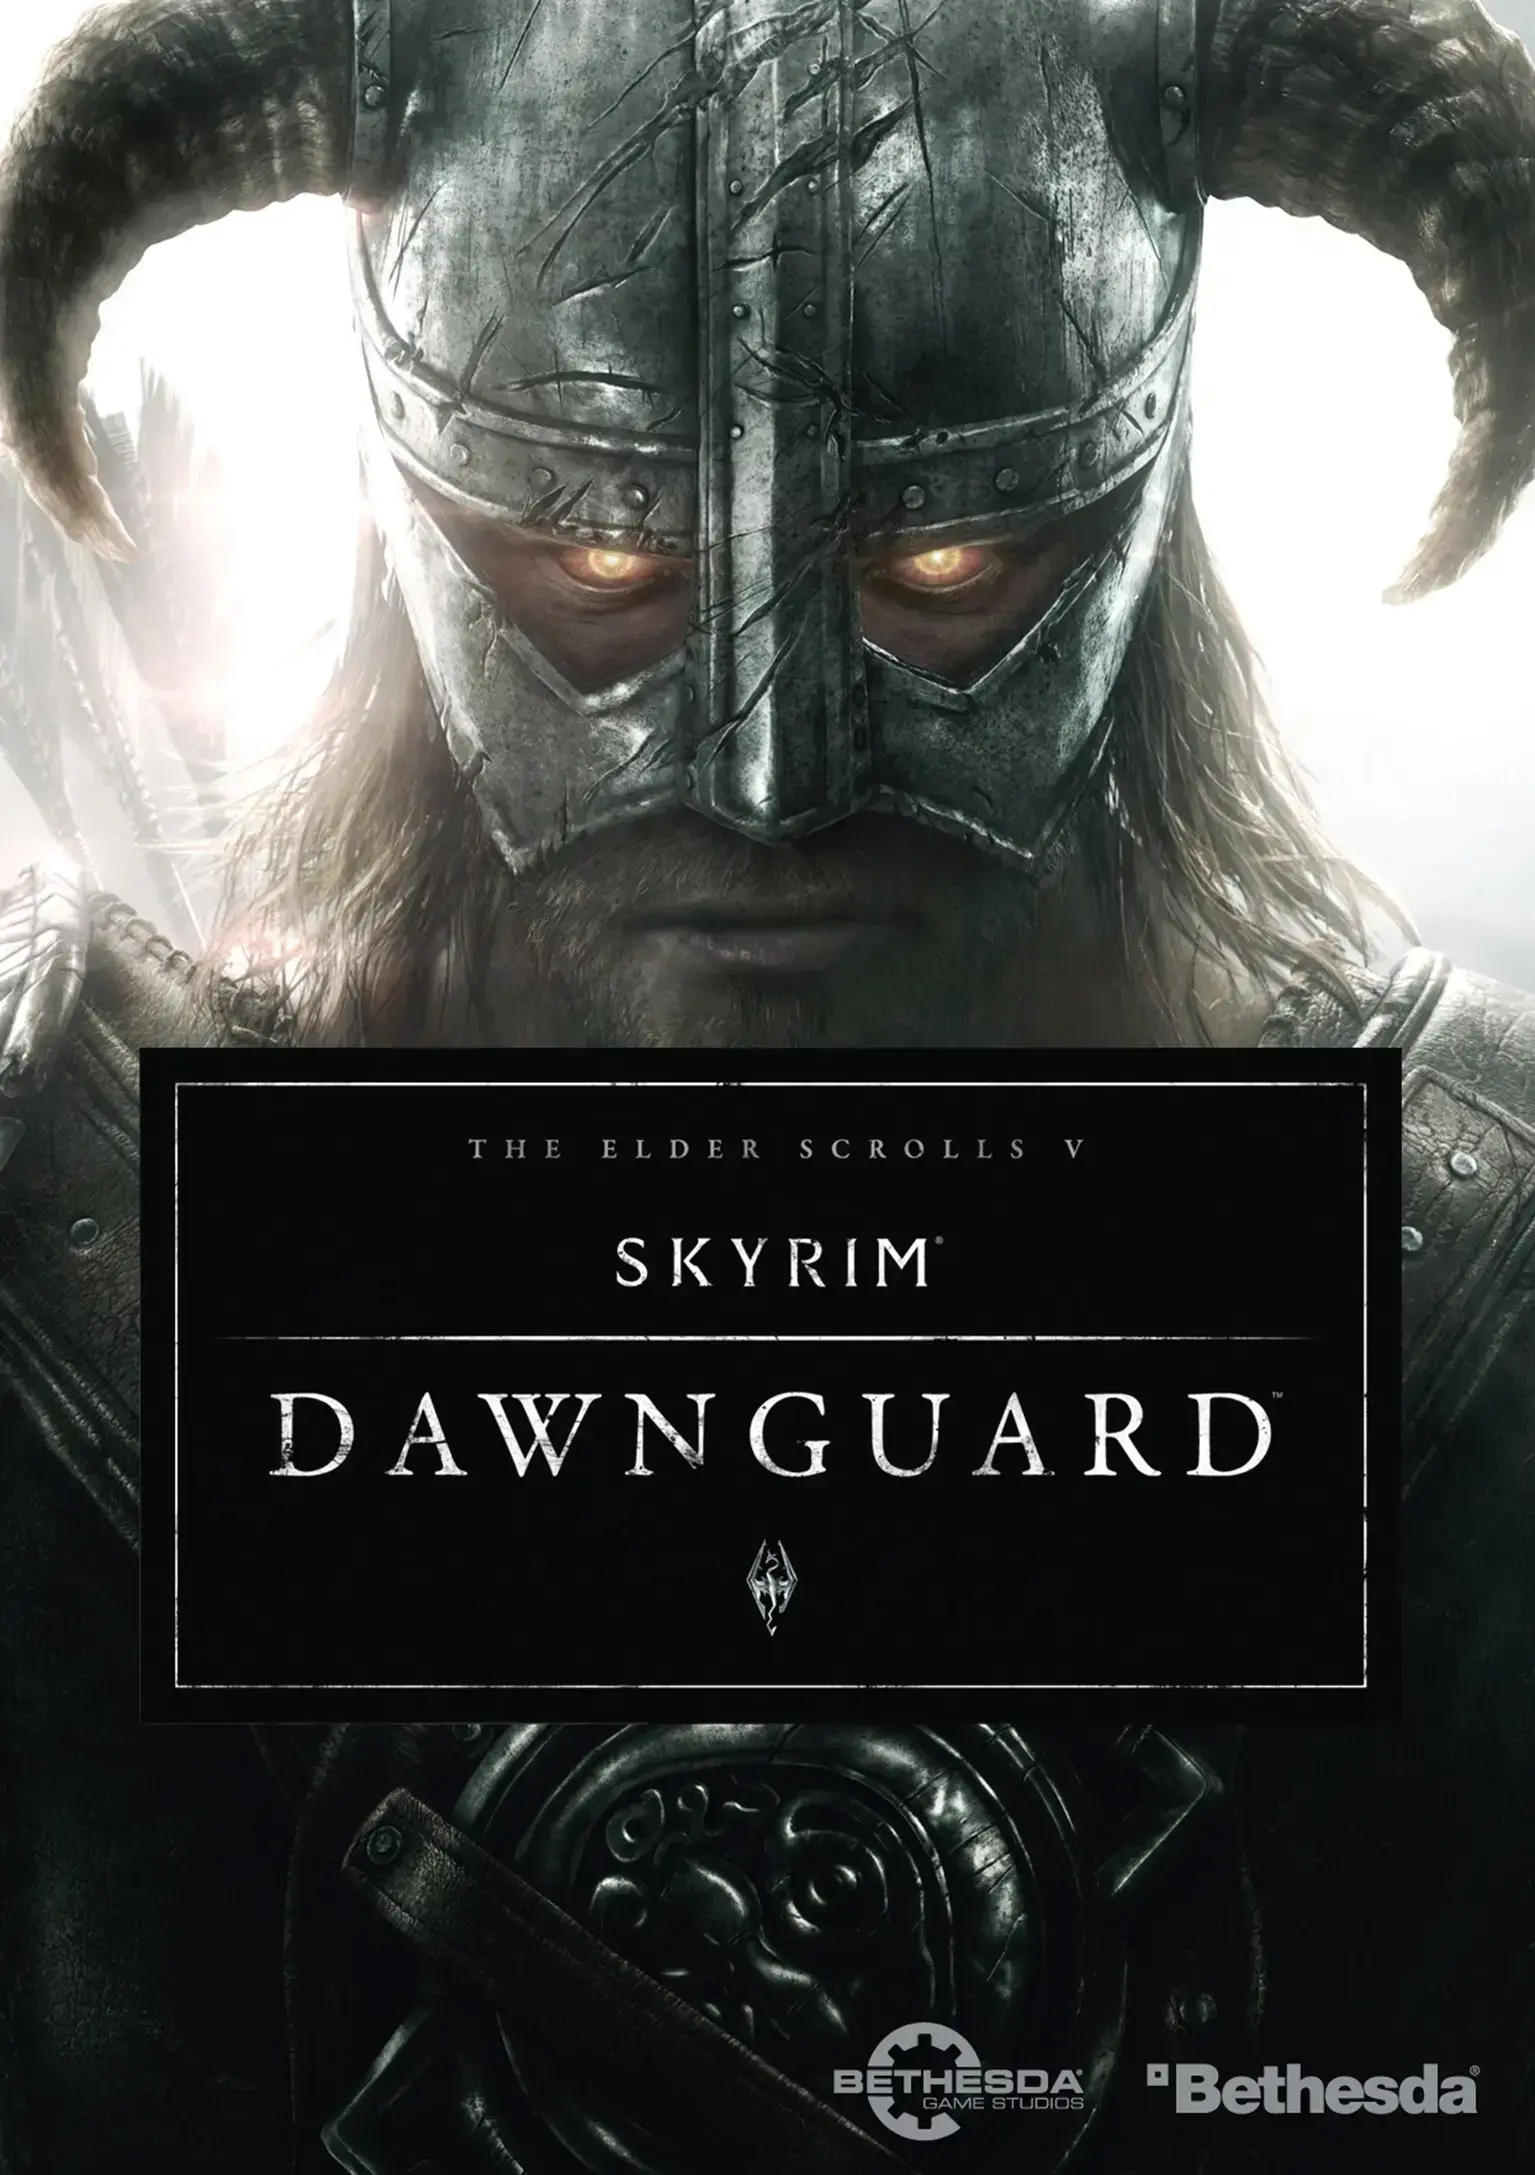 The Elder Scrolls V: Skyrim Dawnguard DLC (PC) - Steam - Digital Code